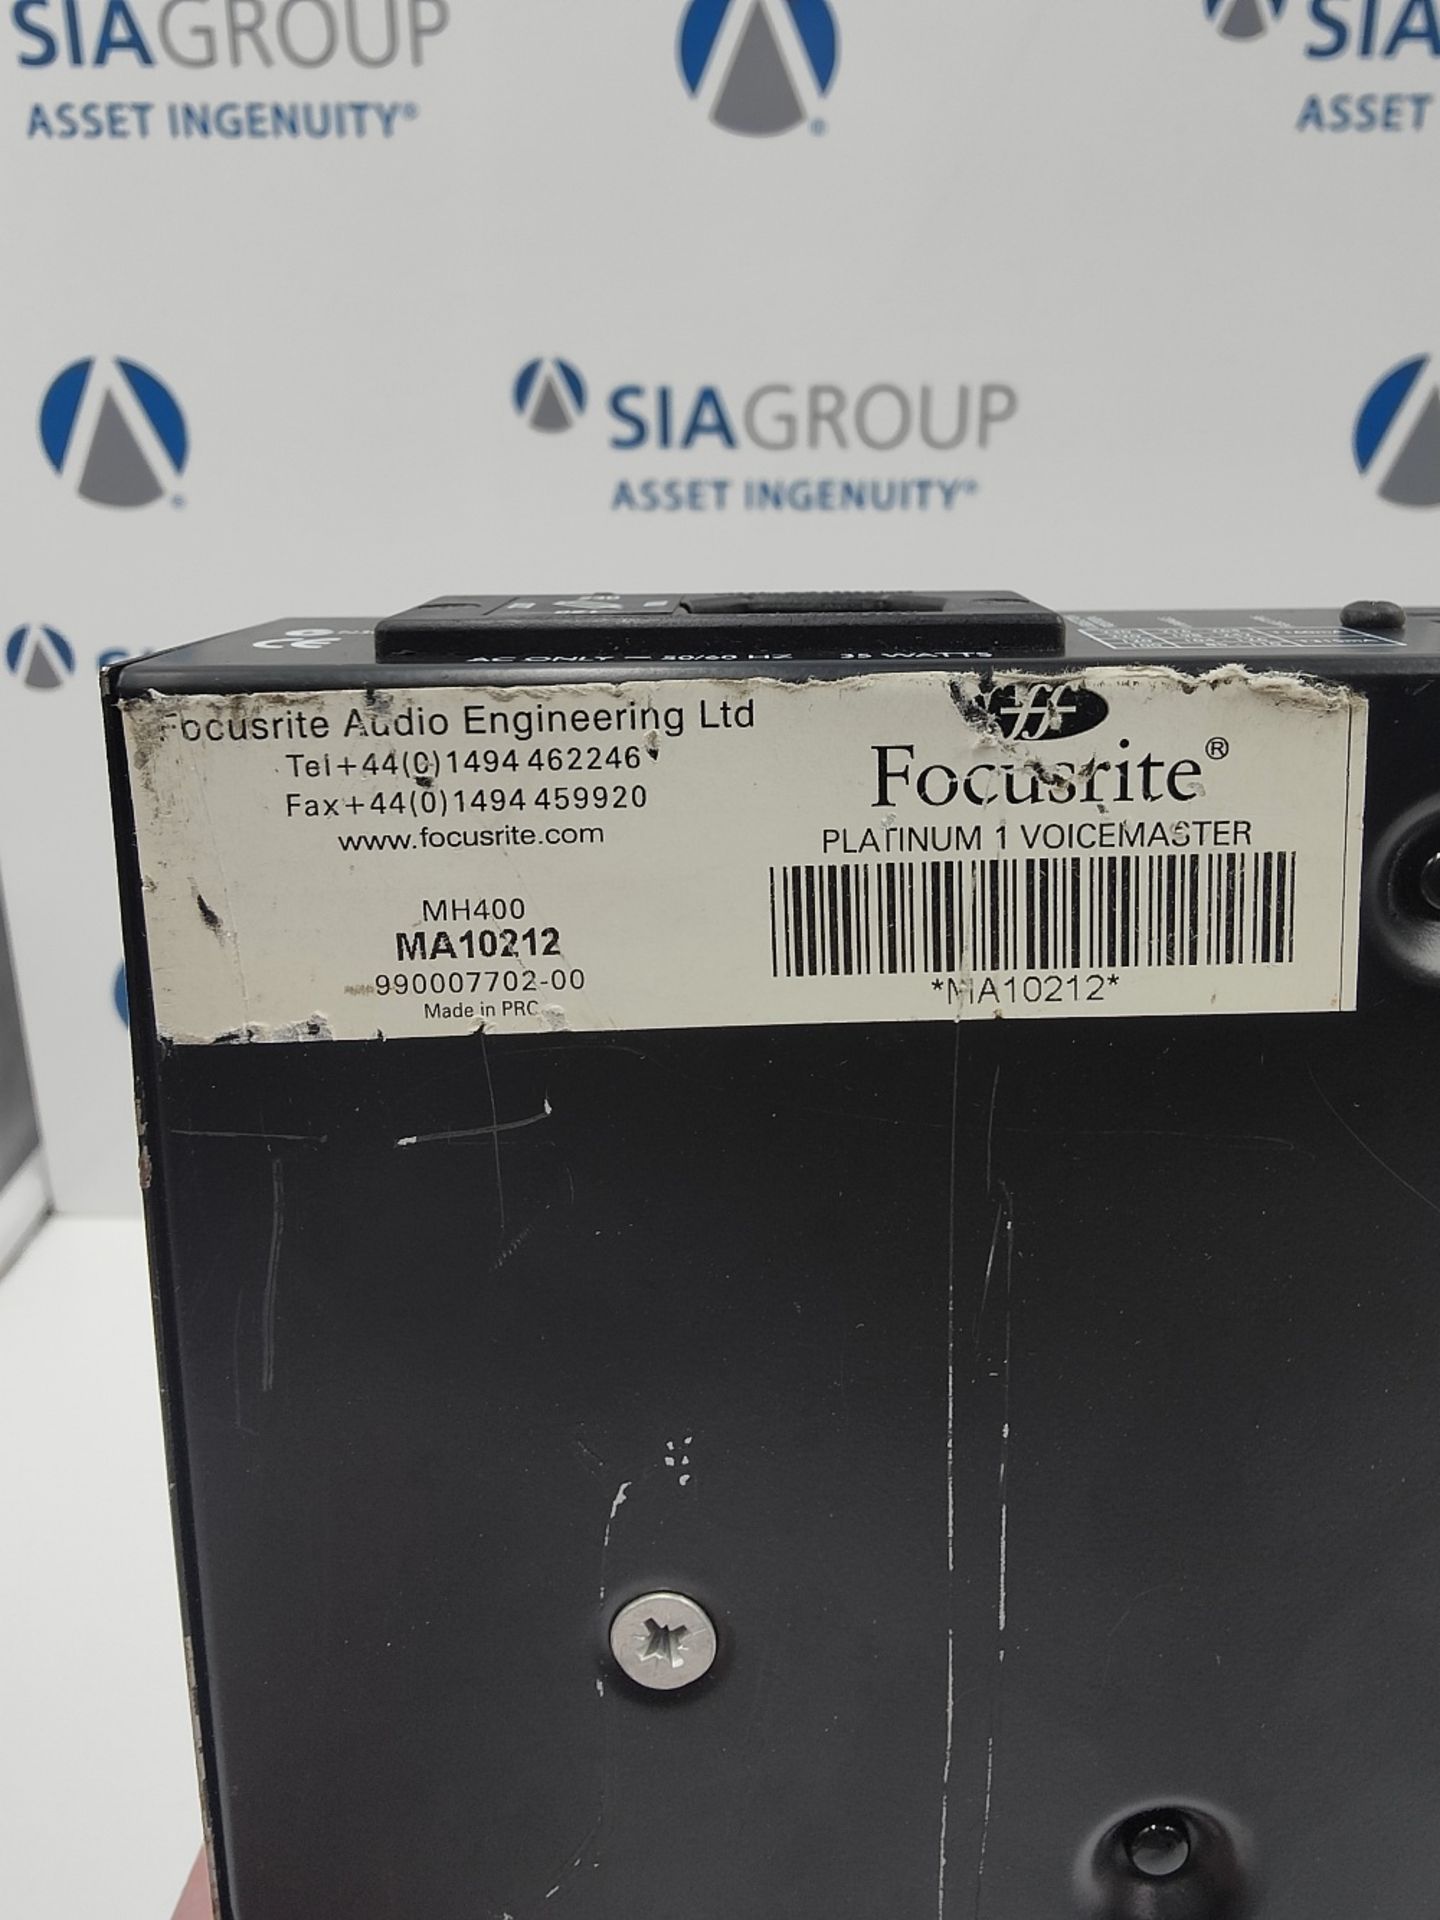 Focusrite MH400 Platinum 1 Voicemaster - Image 4 of 4